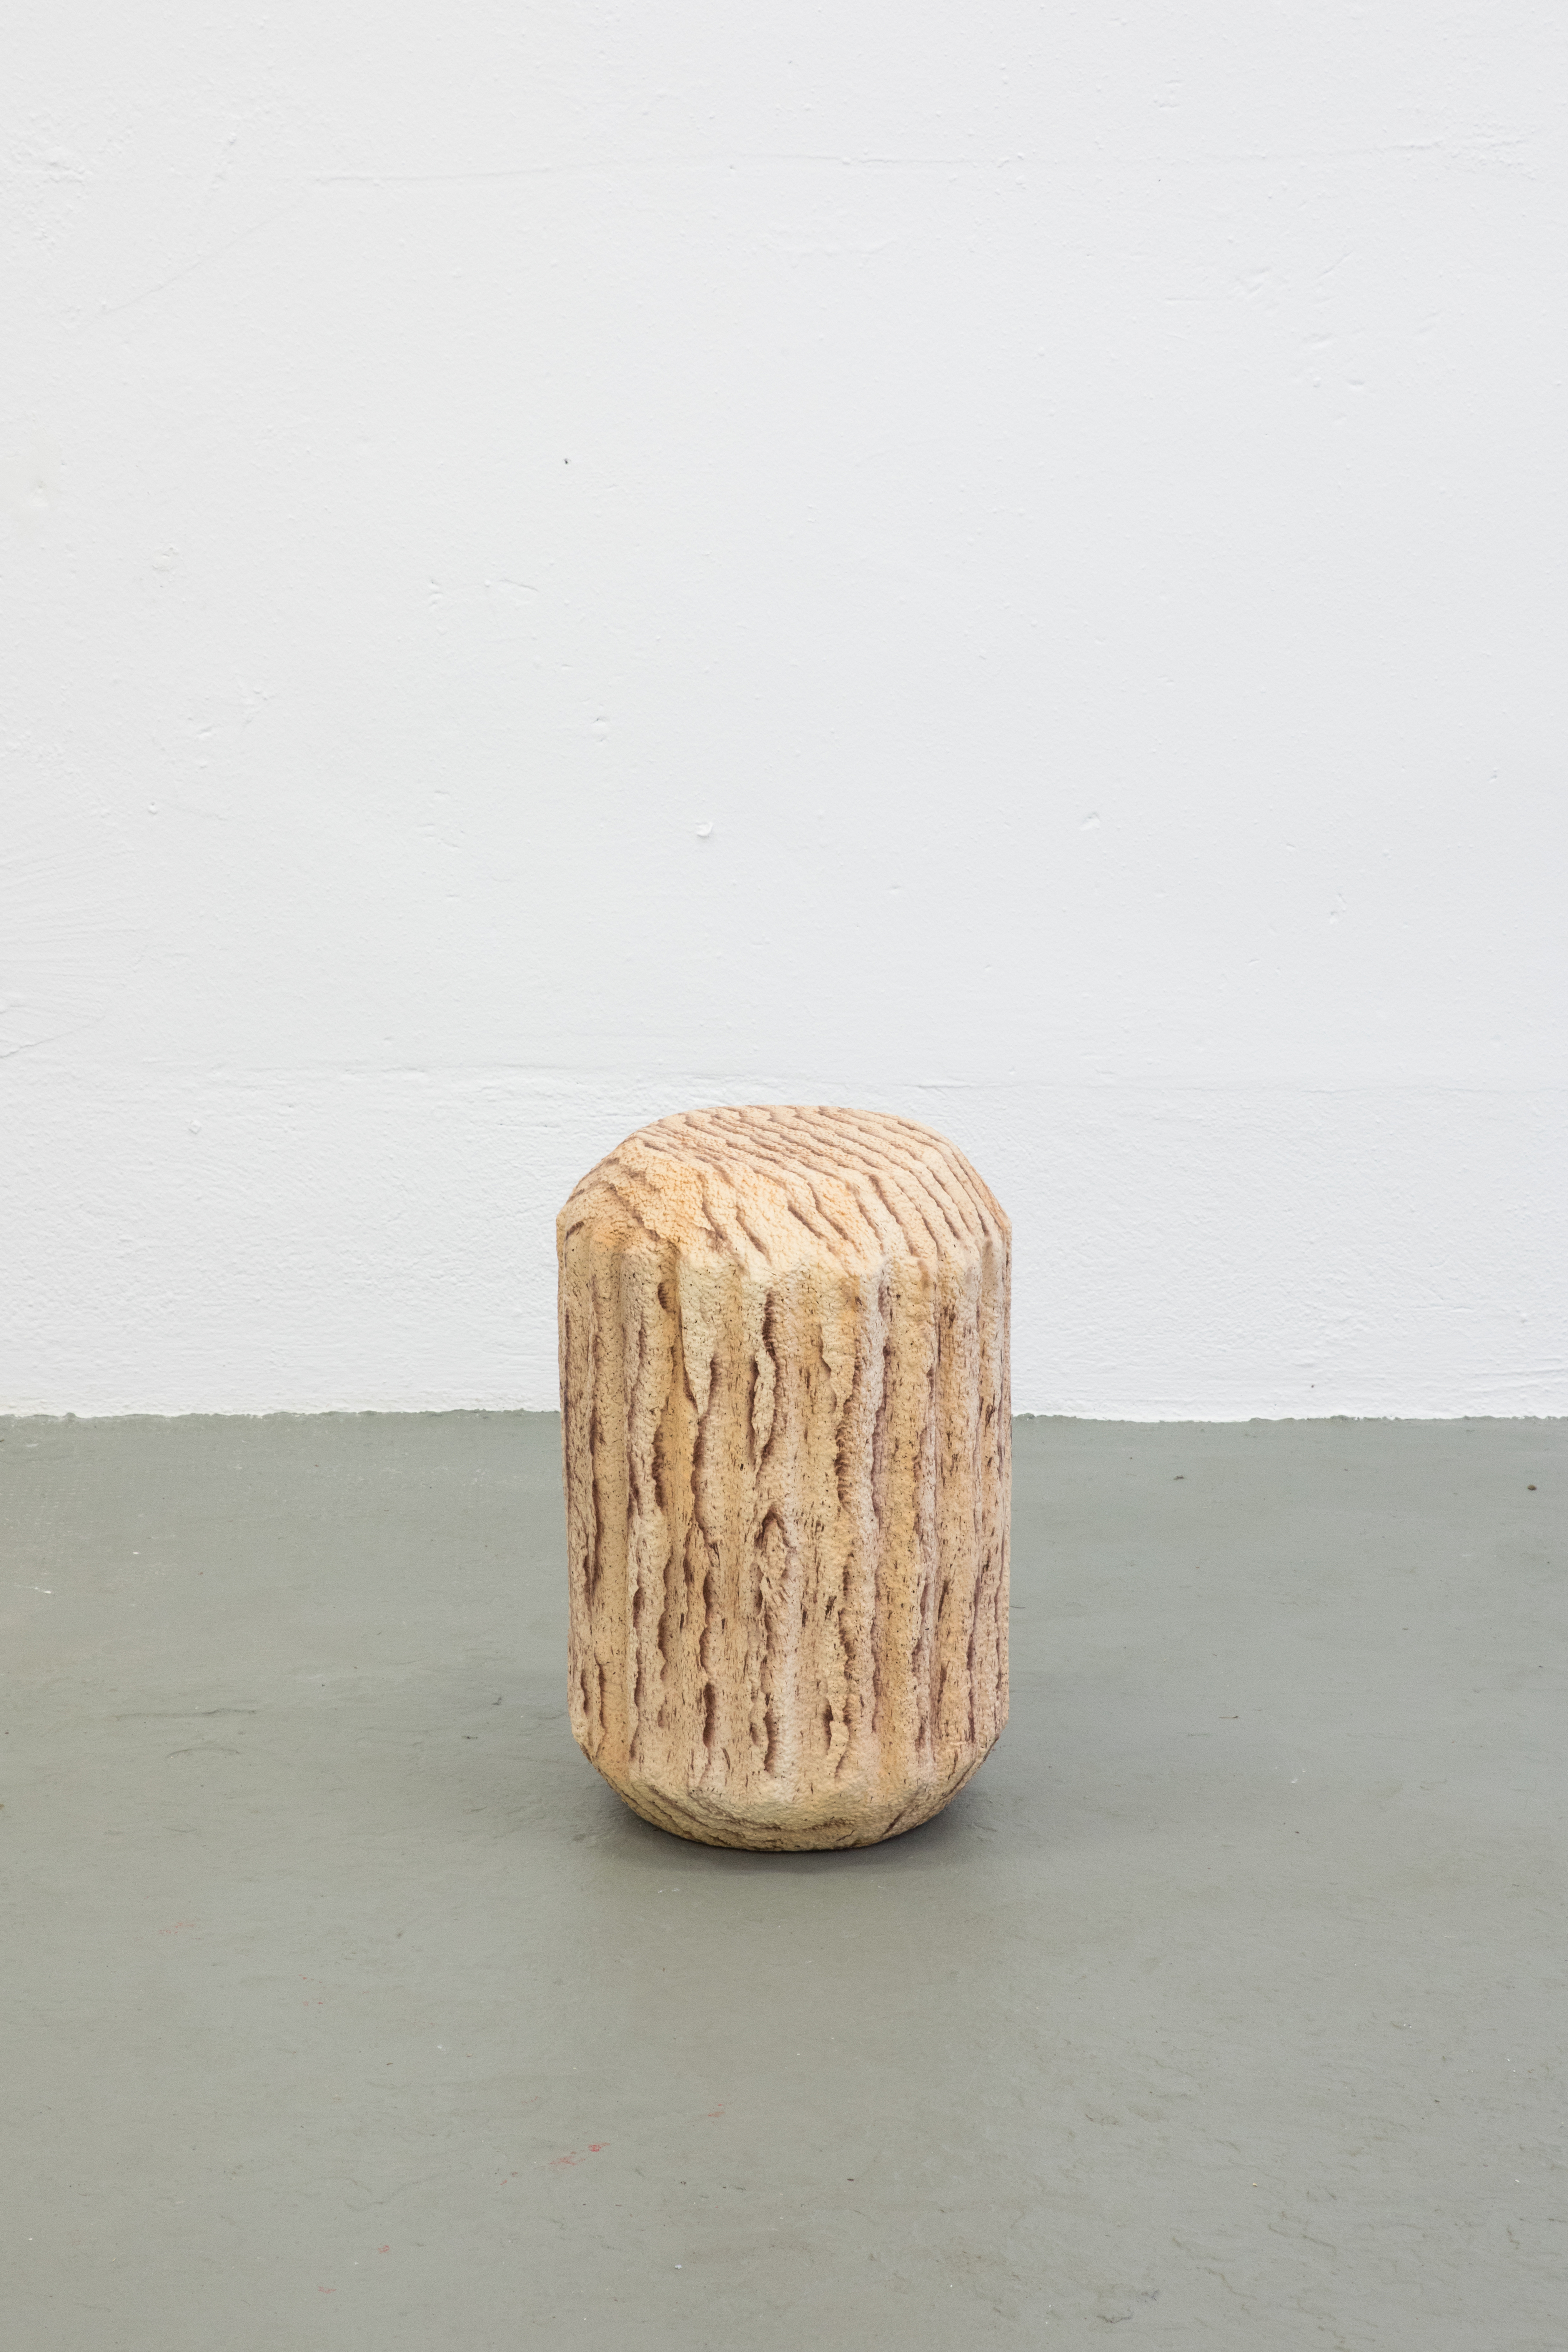 Lukas Marstaller, *Holzdübel*, coated styrofoam